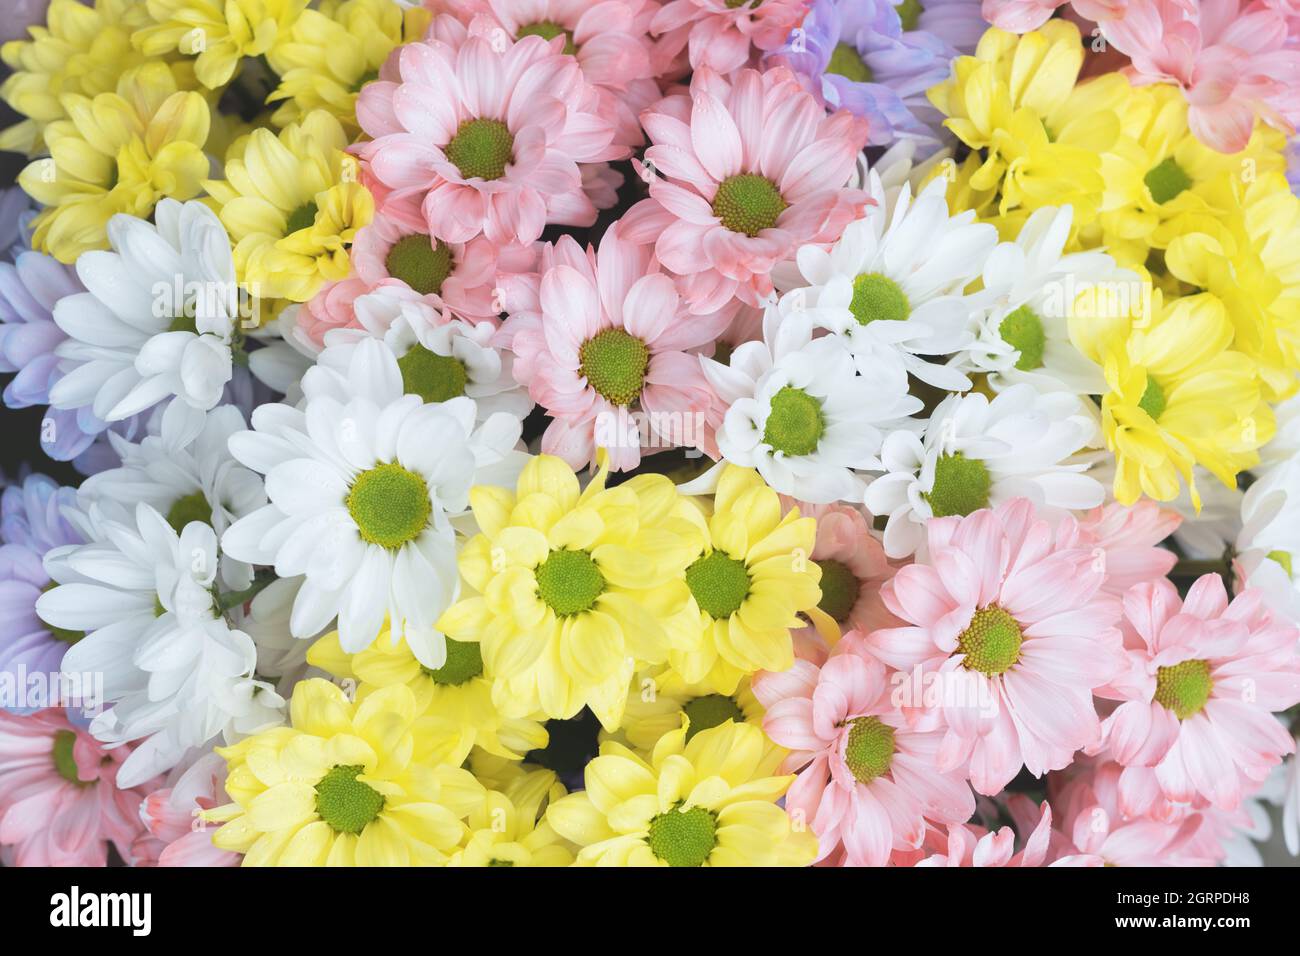 Bouquet de fleurs en tons pastel délicats multicolores fleurs de chrysanthème. Concept floral Banque D'Images